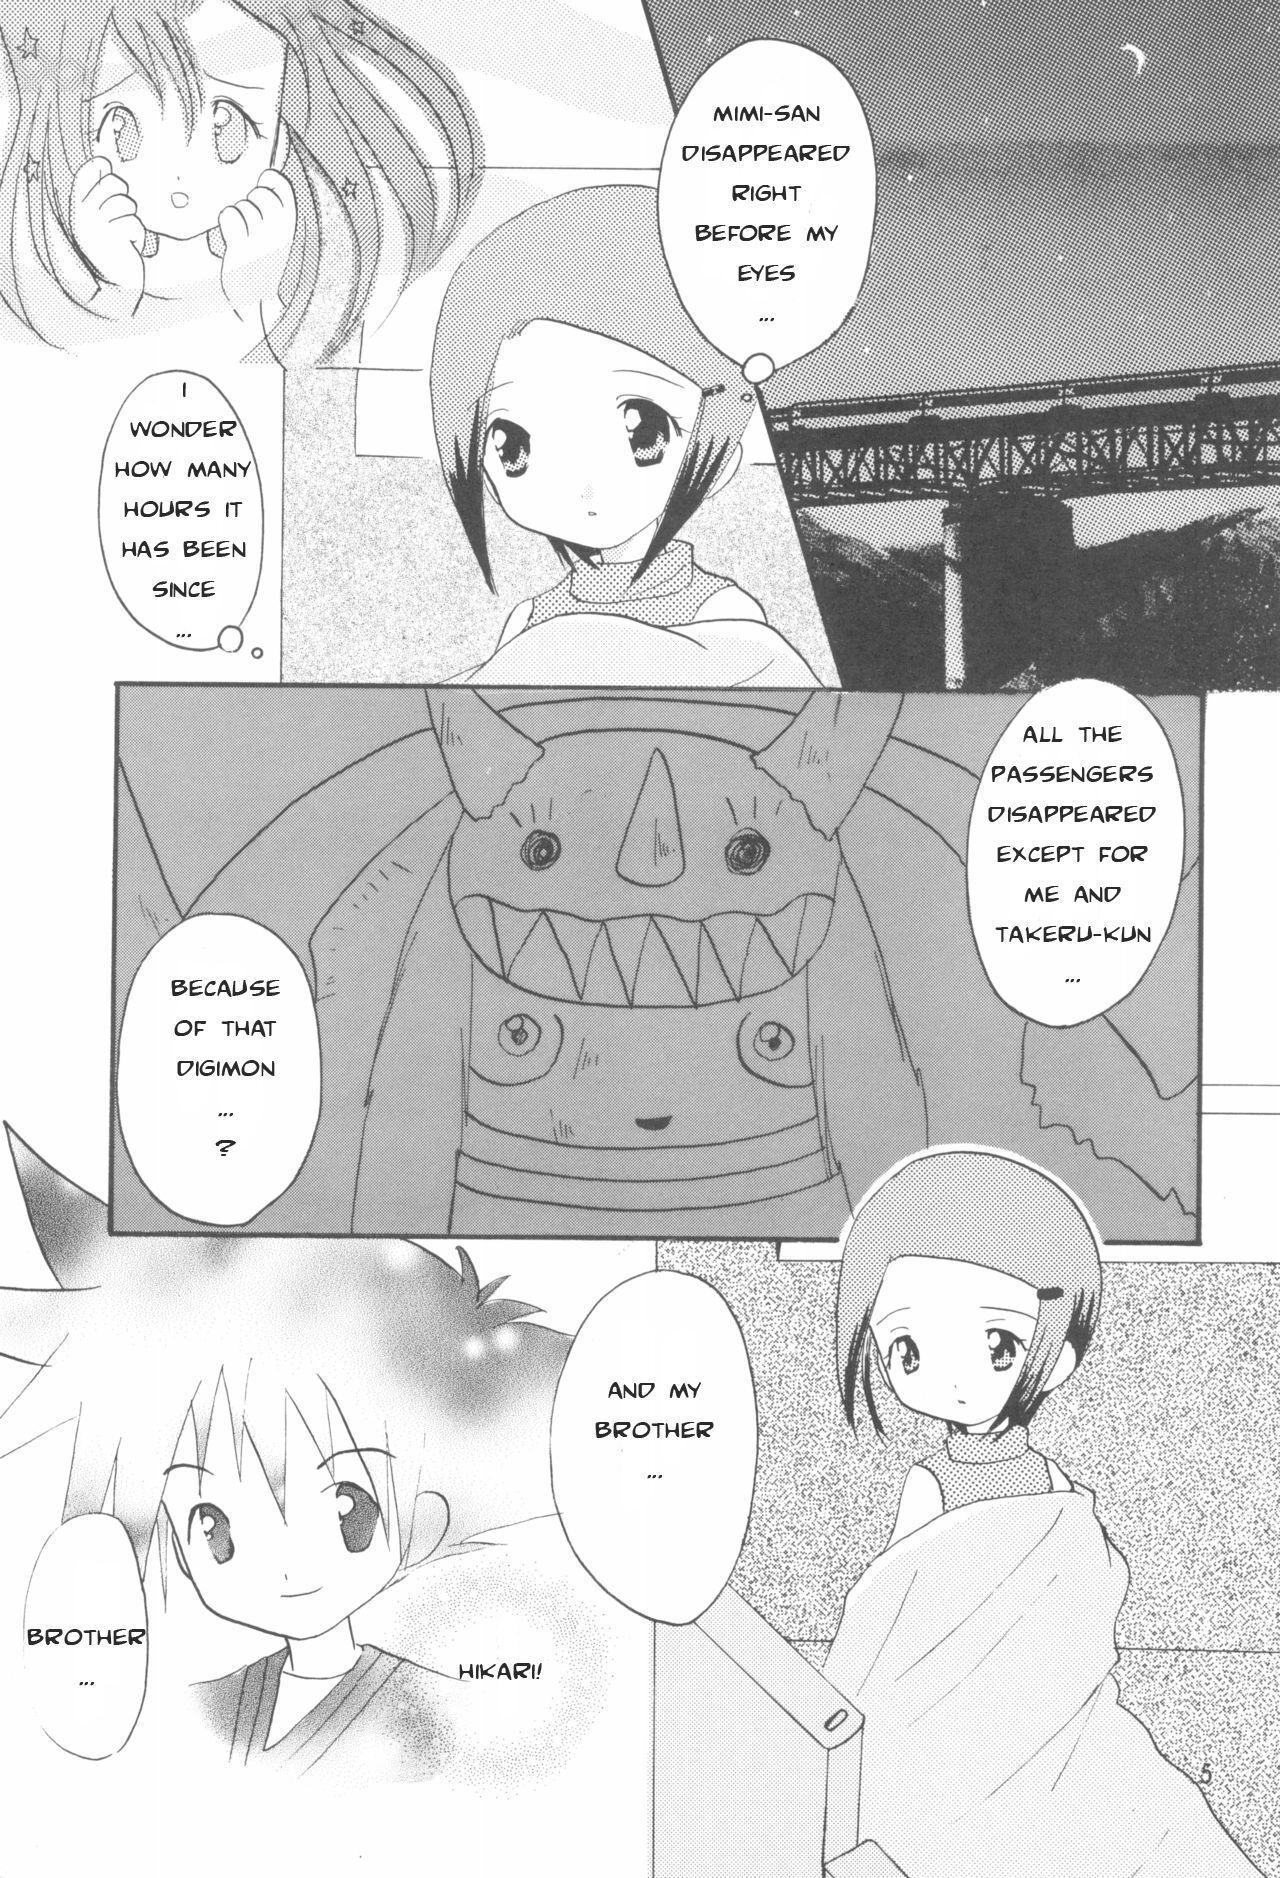 Oriental Hikari Mania - Digimon adventure Pasivo - Page 4